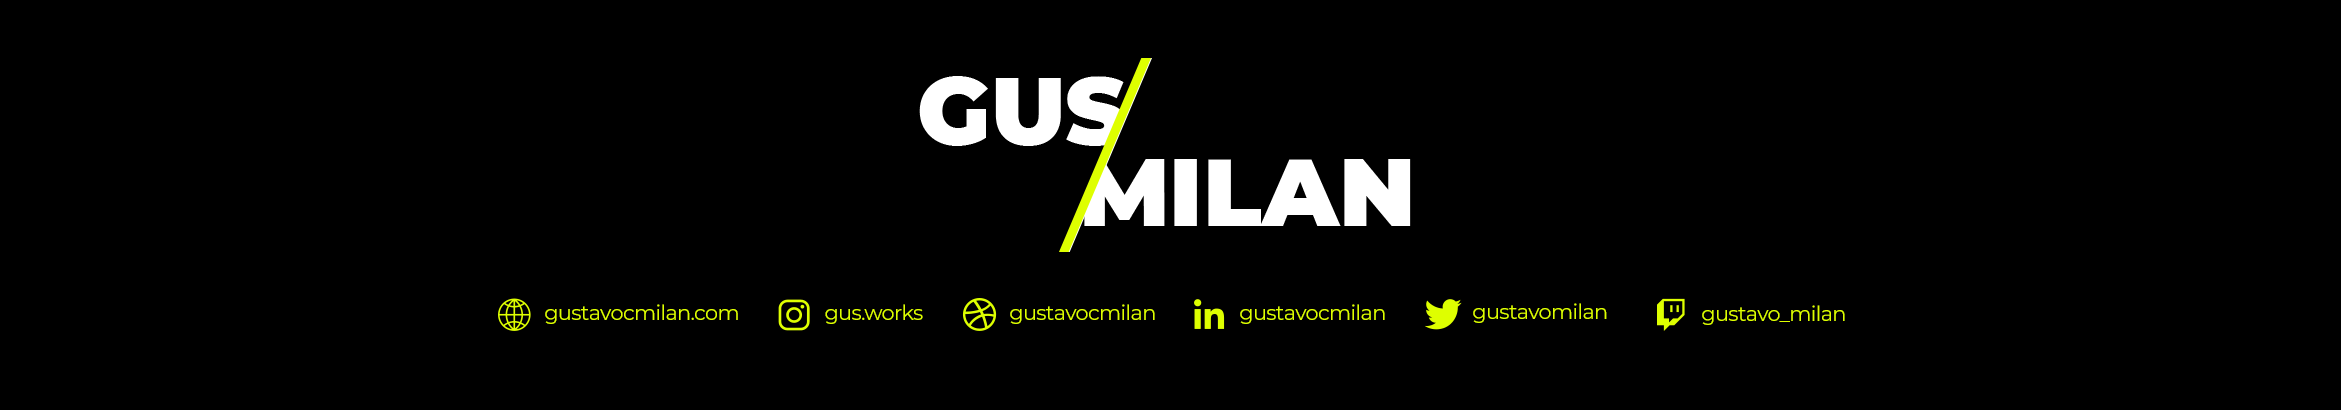 Banner del profilo di Gustavo da Costa Milan